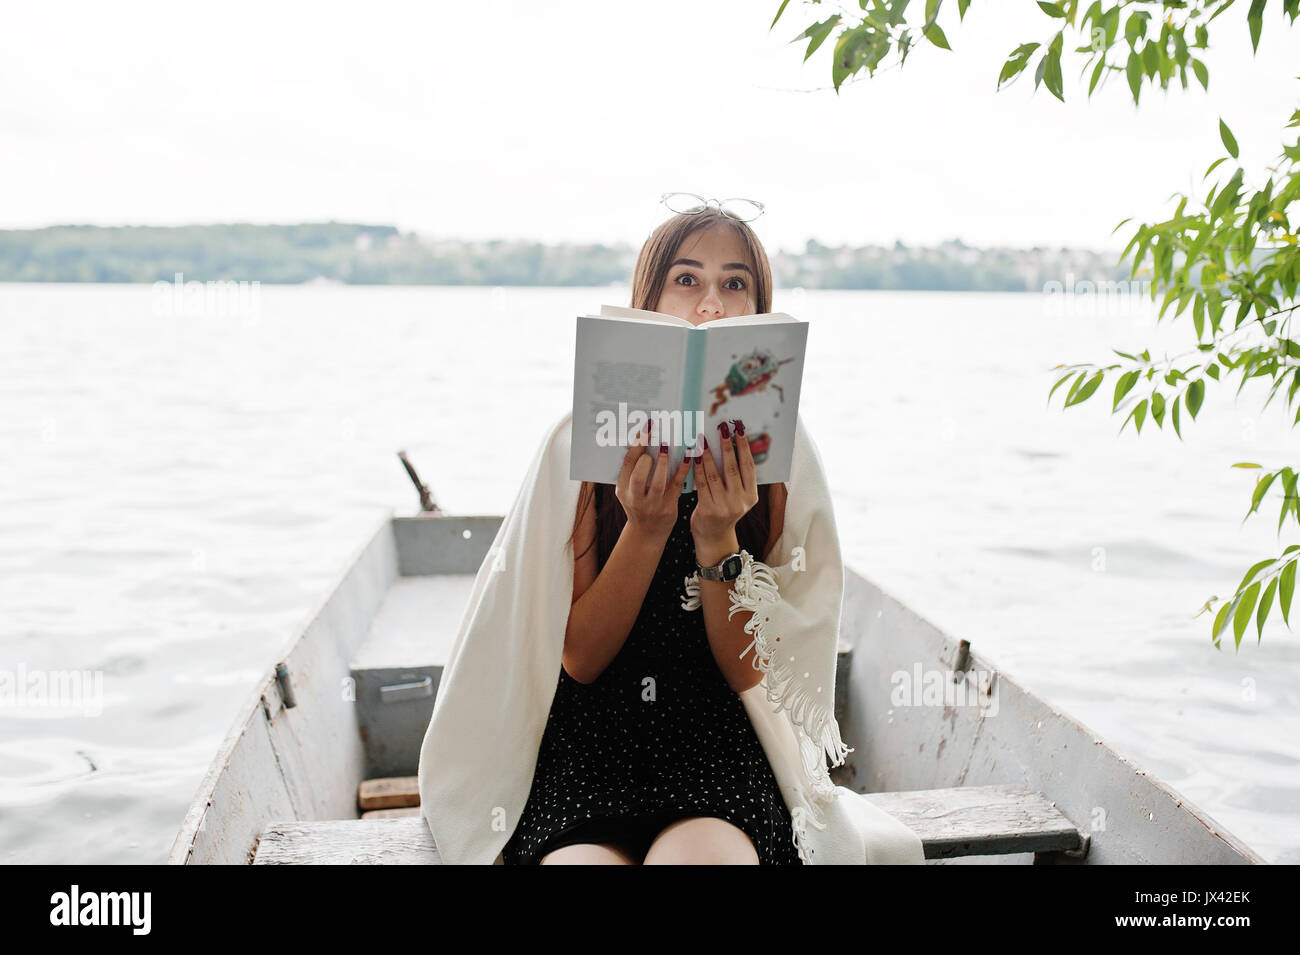 Ritratto di una donna attraente vestita di nero a pois, vestito scialle bianco e degli occhiali per leggere un libro in una barca sul lago. Foto Stock